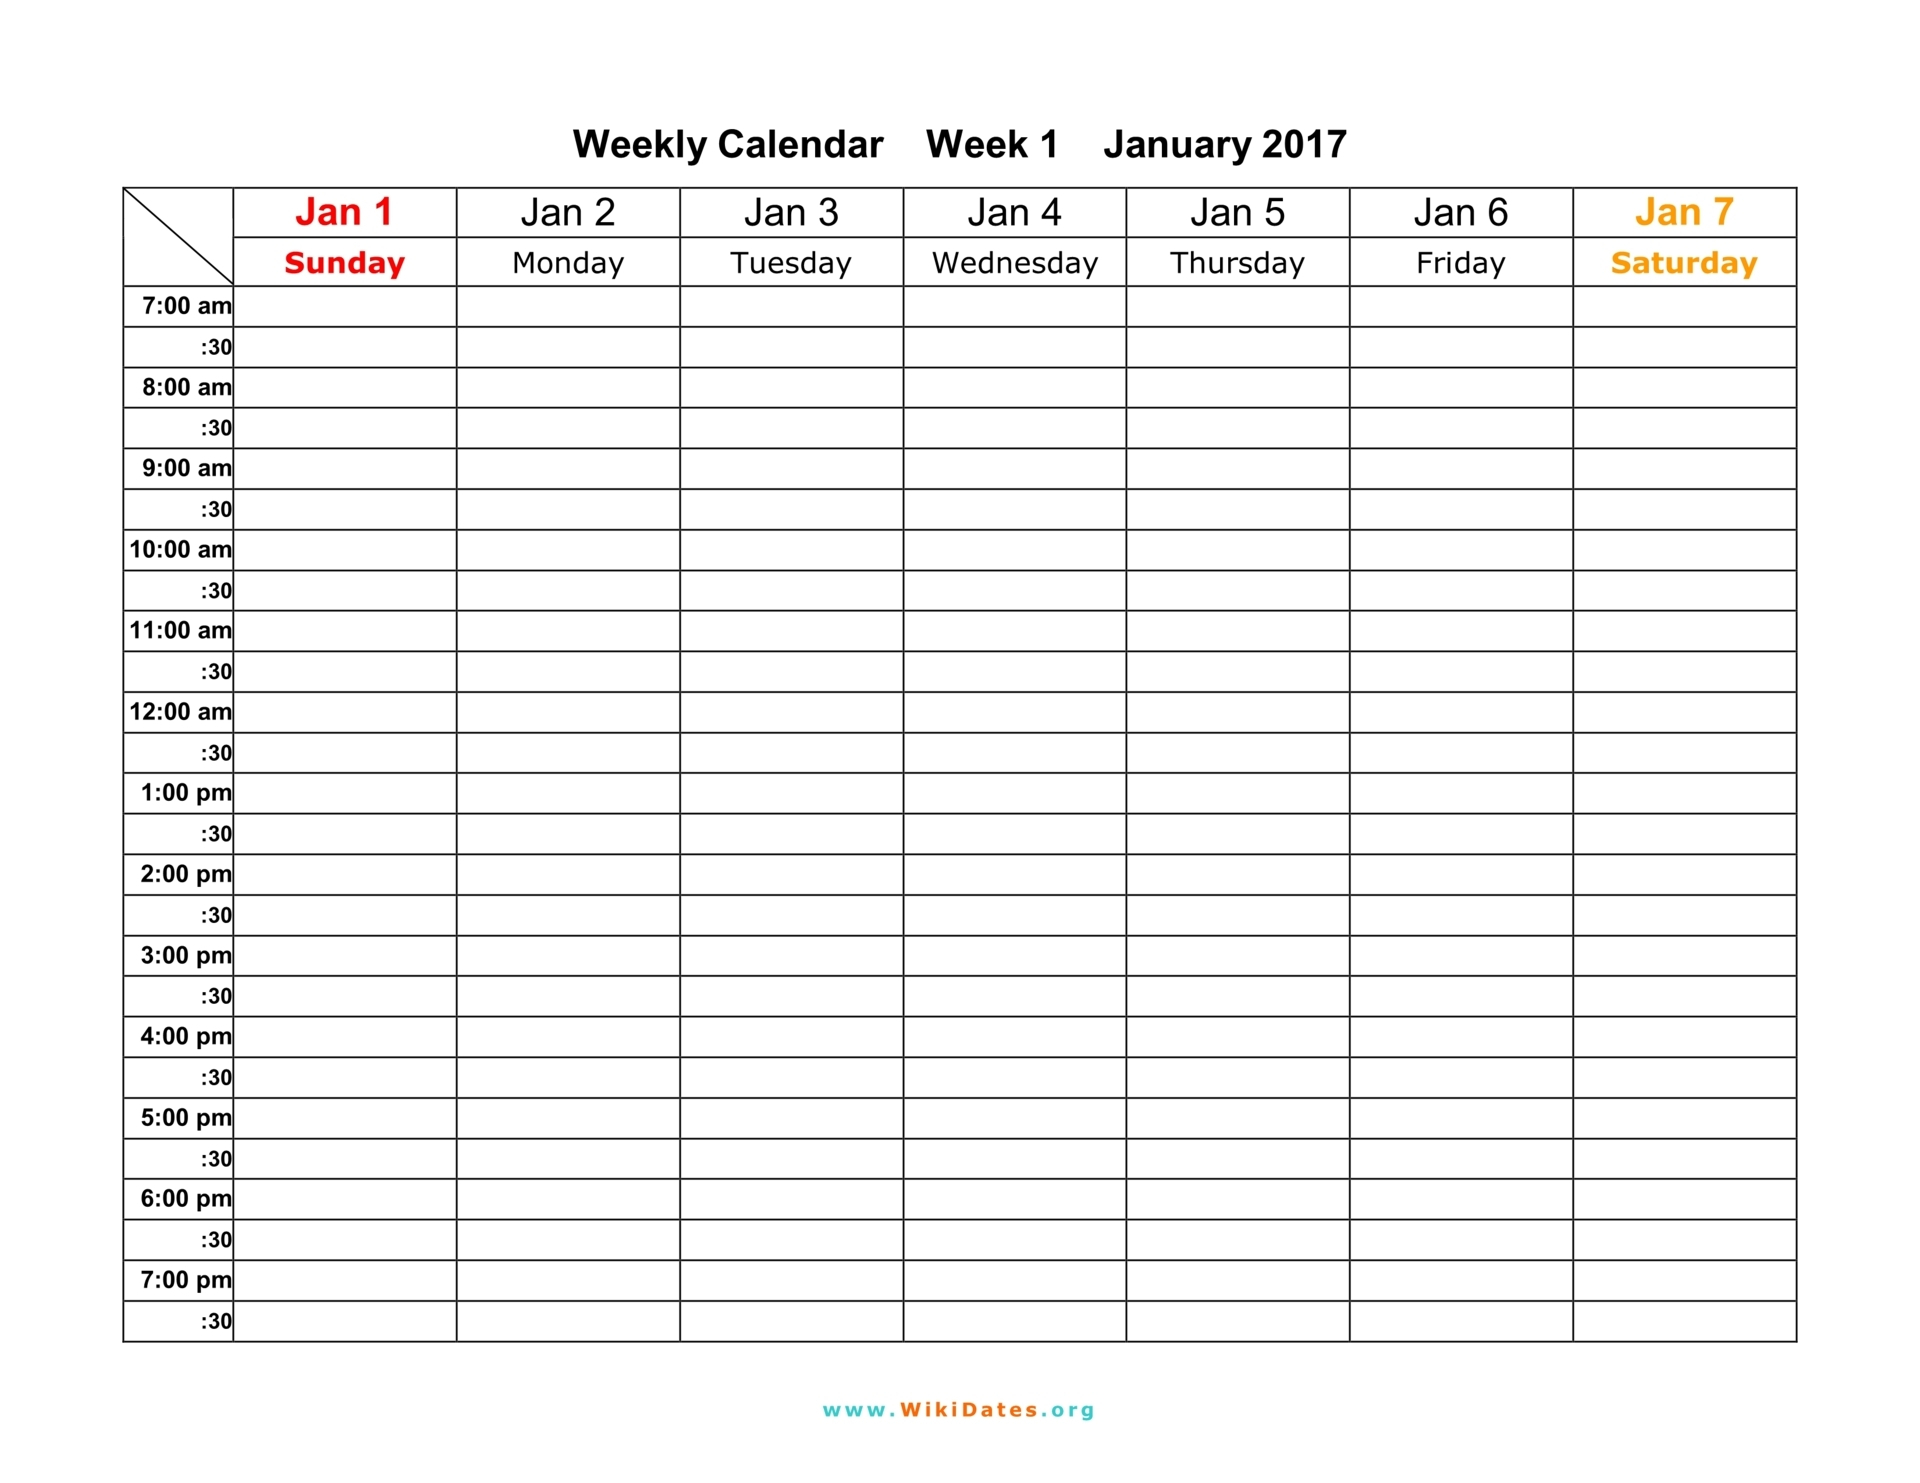 Weekly Calendar Download Weekly Calendar 2017 And 2018